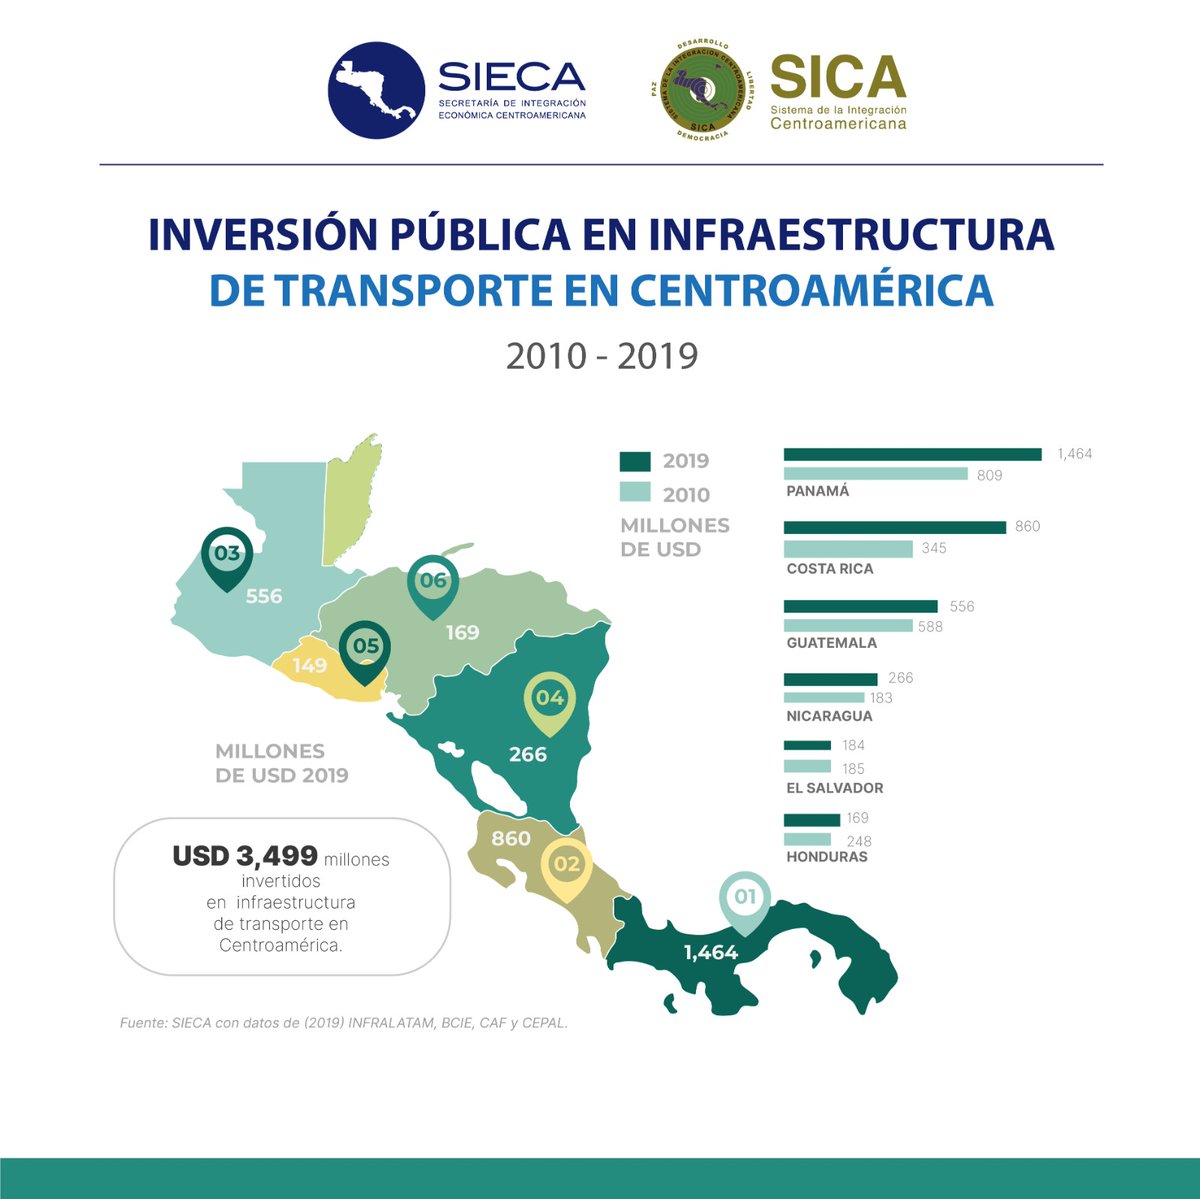 #CentroaméricaEnCifras | En 2019 la región invirtió USD 3,499 millones en infraestructura de transporte, con las siguientes características: ✅256.5 km de línea férrea en operación ✅6,525 km de carreteras centroamericanas ✅148, 176 km de carreteras formales, secundarias,